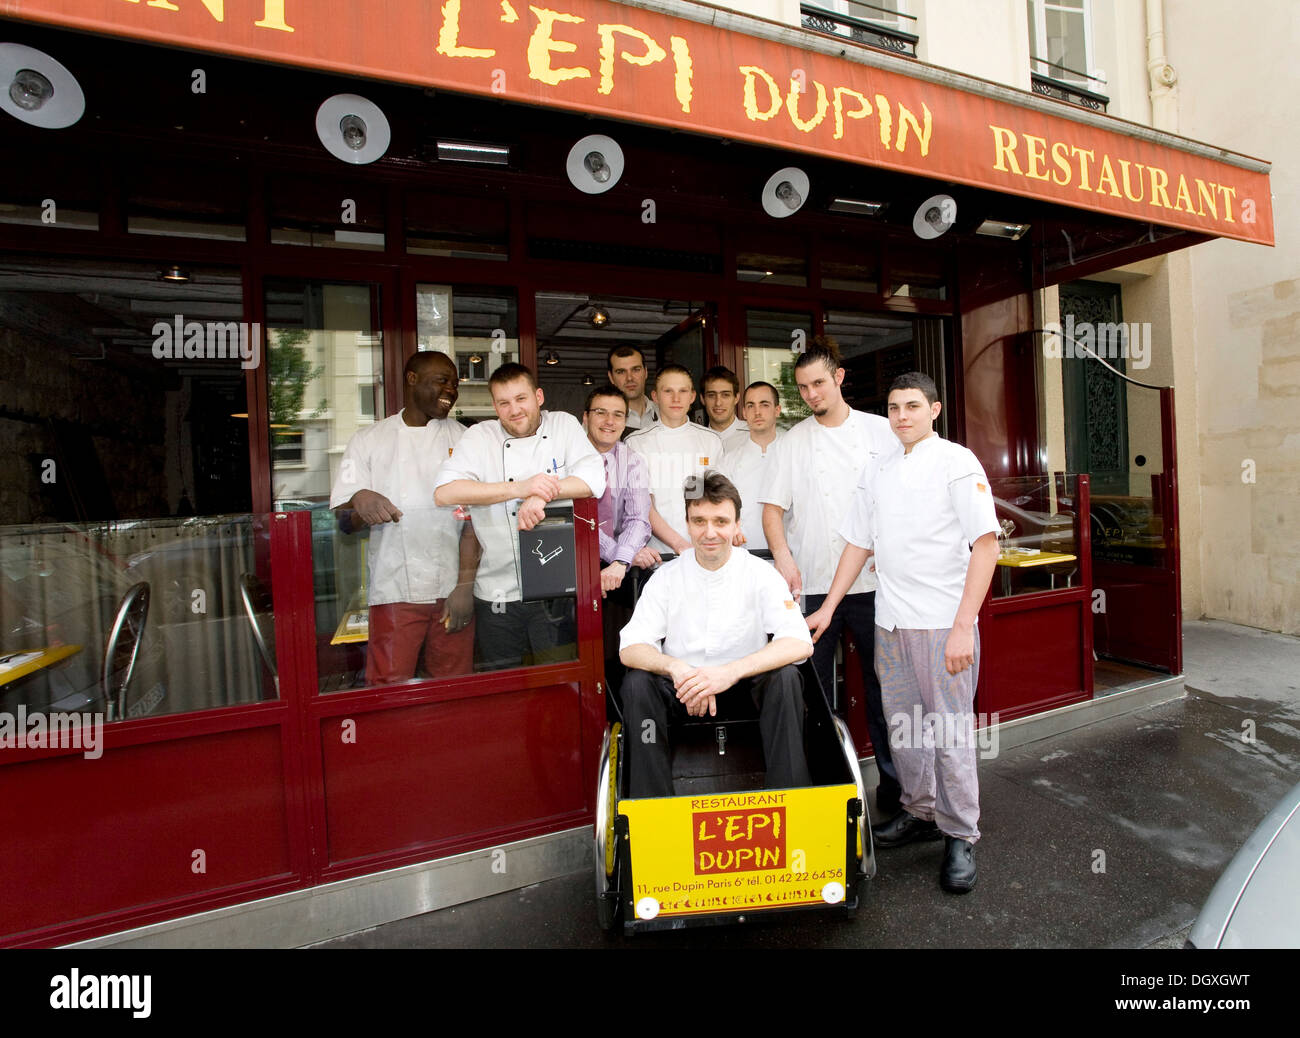 Equipaggio di servizio dal L'Epi Dupin ristorante, capo chef Francois Pasteau seduto in un carro, 6th Arrondissement, Parigi, Francia Foto Stock